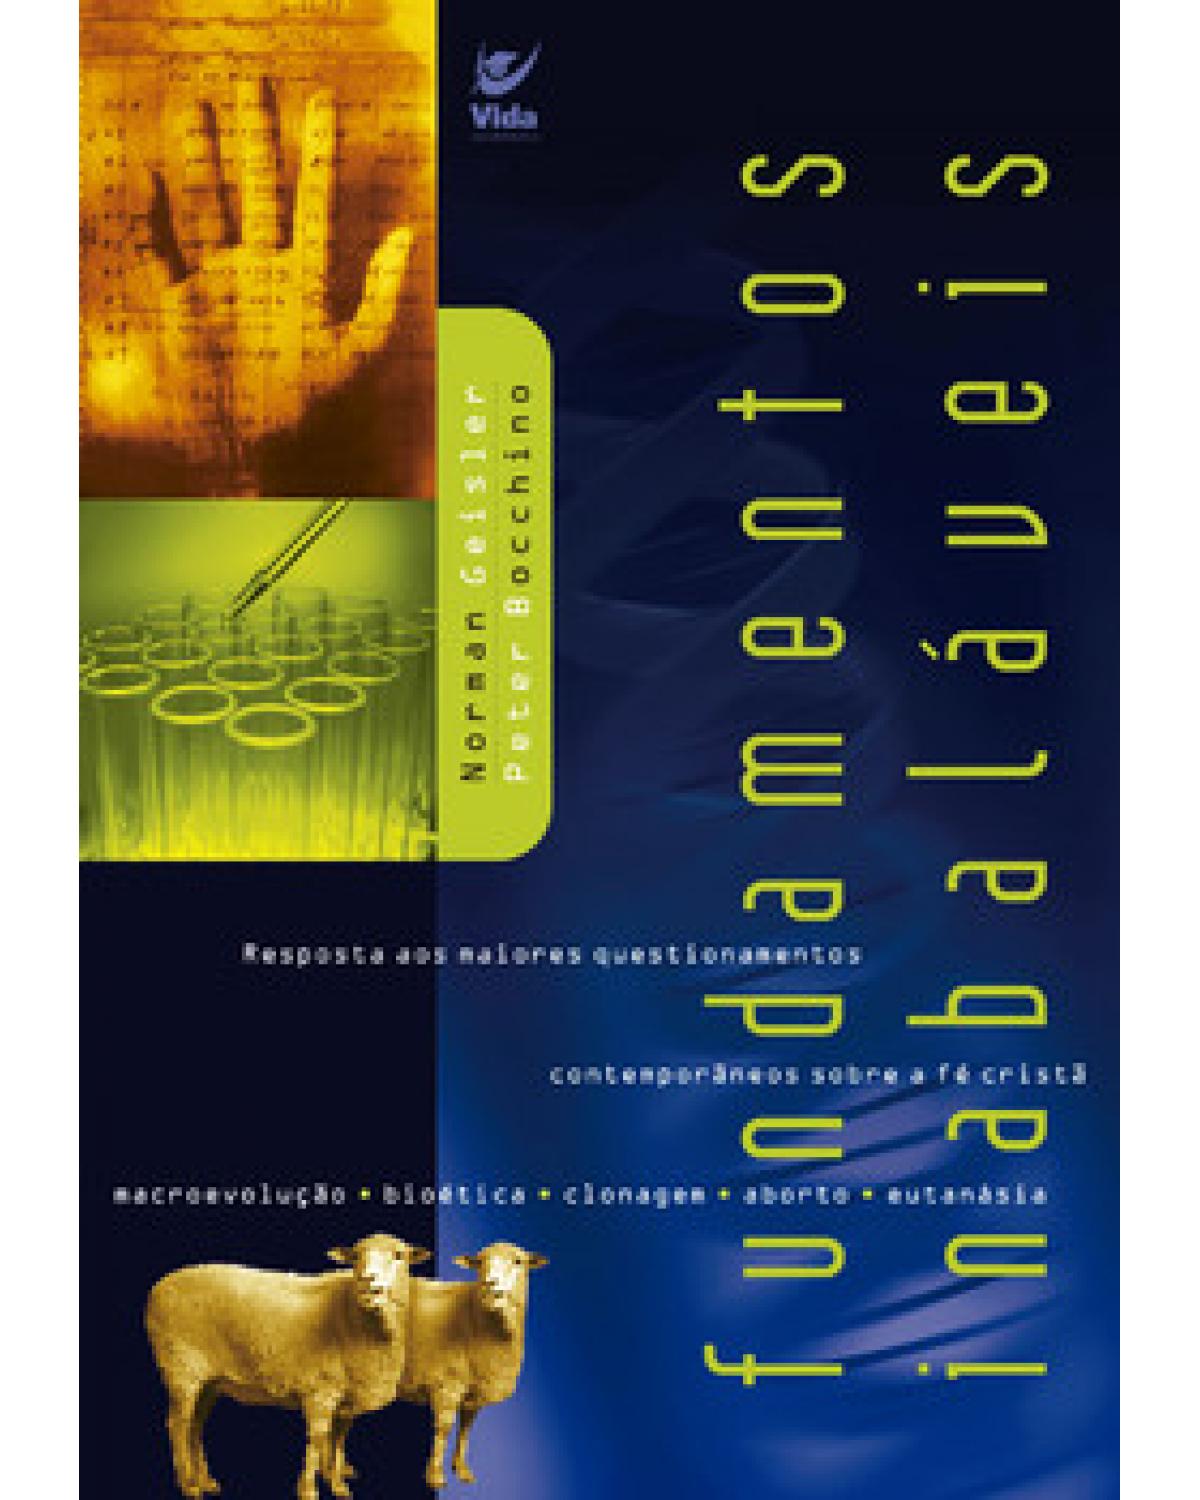 Fundamentos inabaláveis - Respostas para os maiores questionamentos contemporâneos sobre a fé cristã - 1ª Edição | 2003